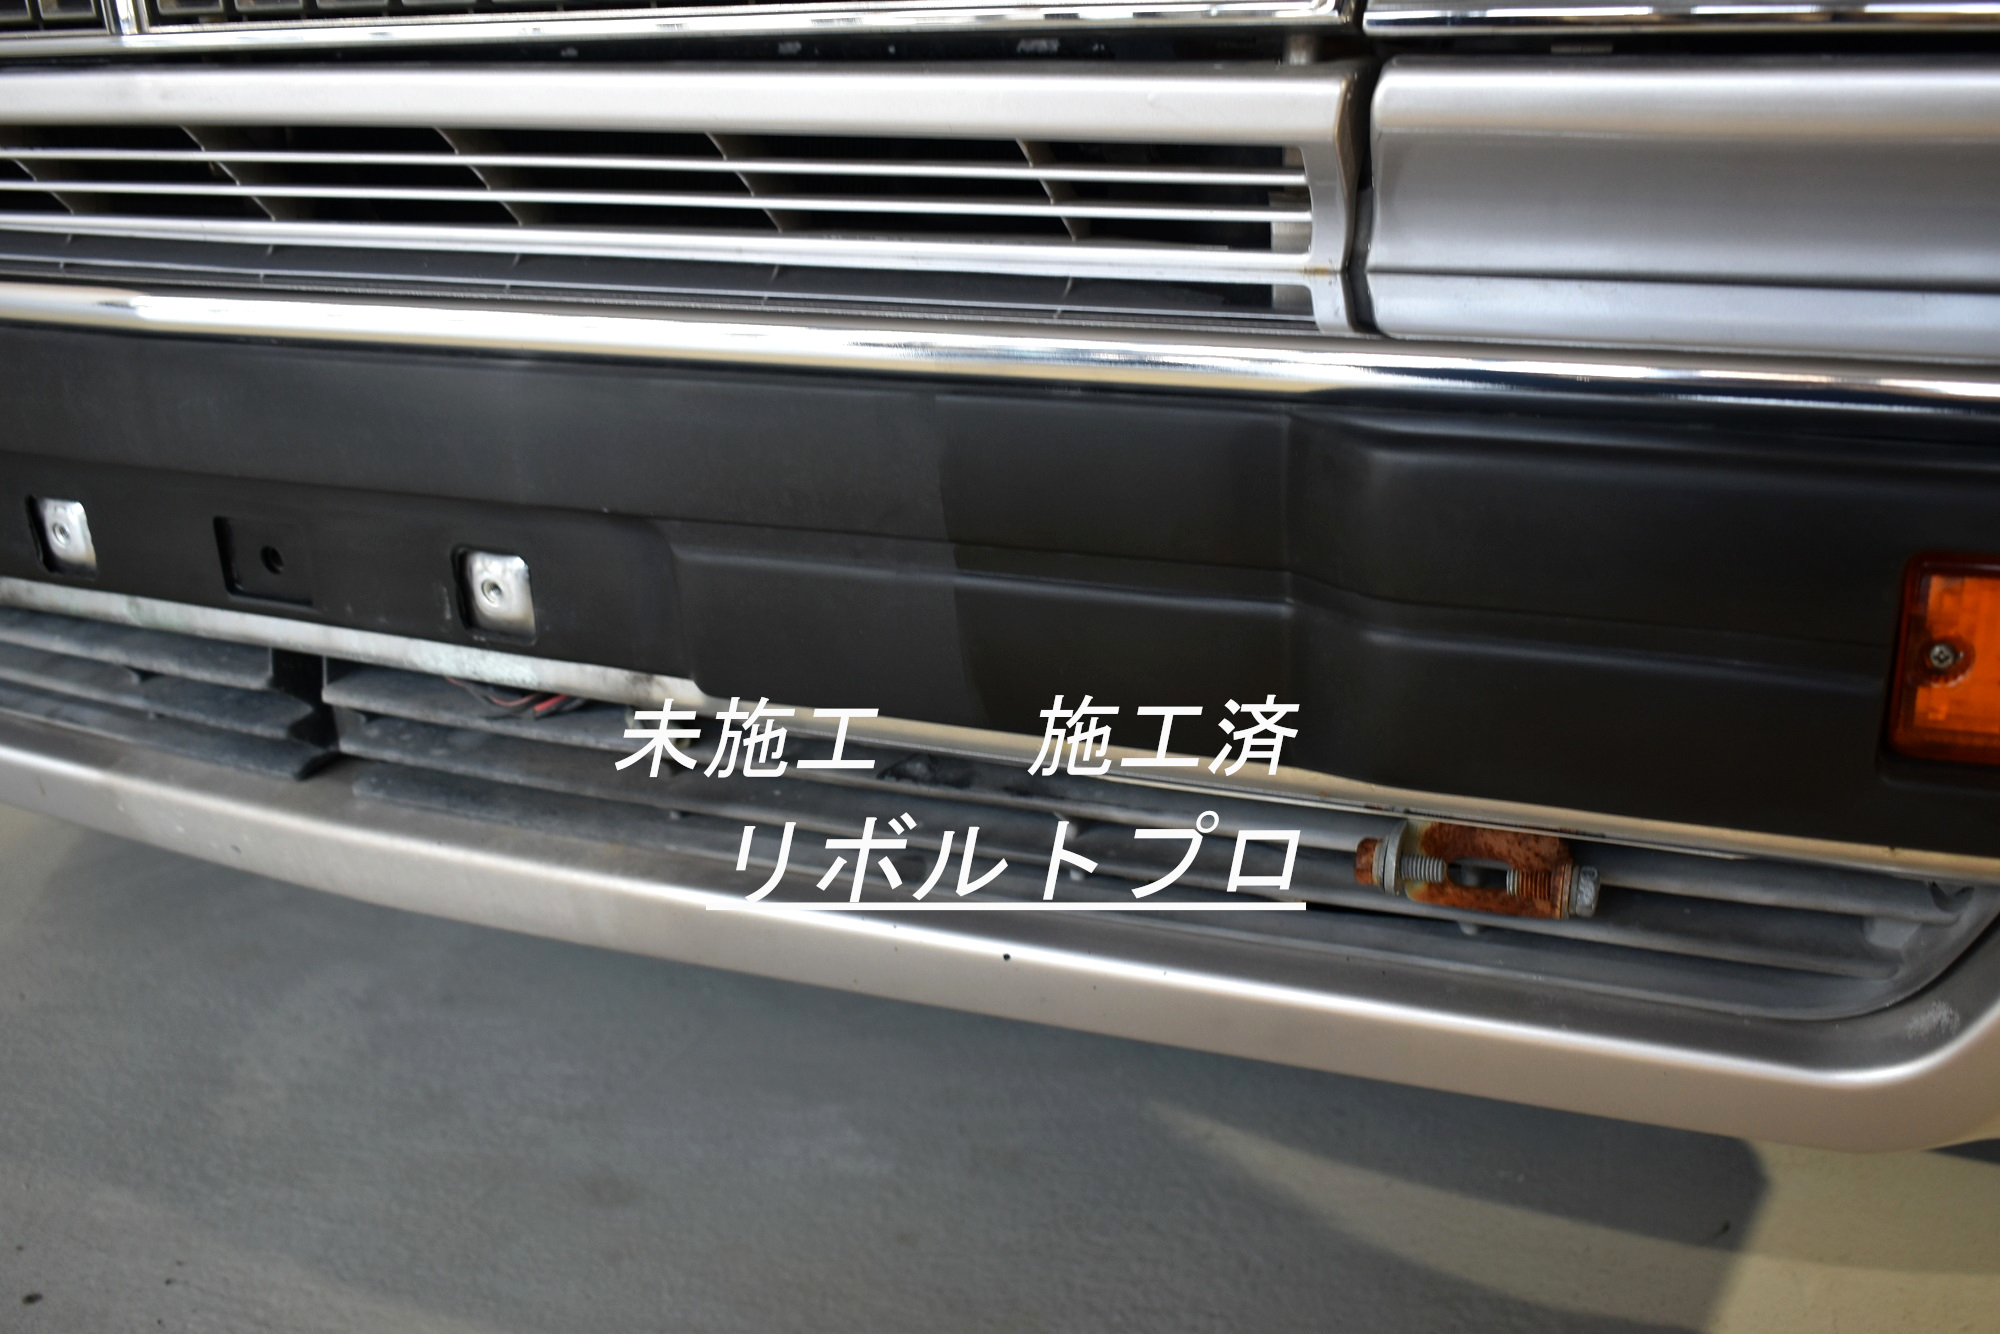 旧車も樹脂パーツコーティングで復活 日産 セドリックワゴン 愛媛県松山市 洗練された技術で愛車を守る リボルト松山 ブログ